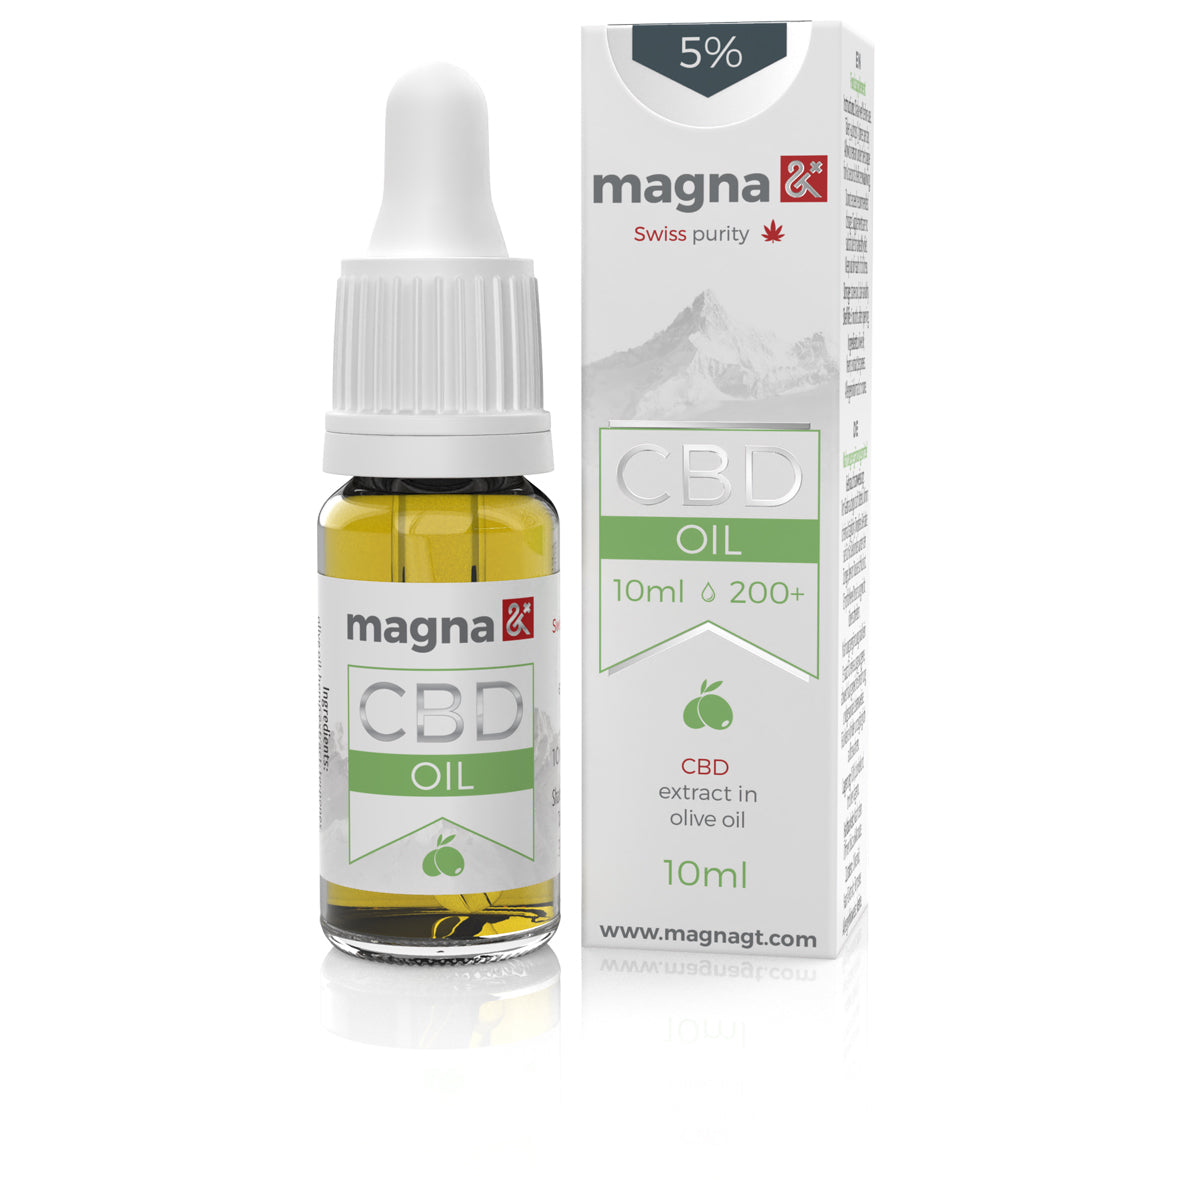 Magna G&T 5% CBD Oil 500mg | 10ml | in olive oil